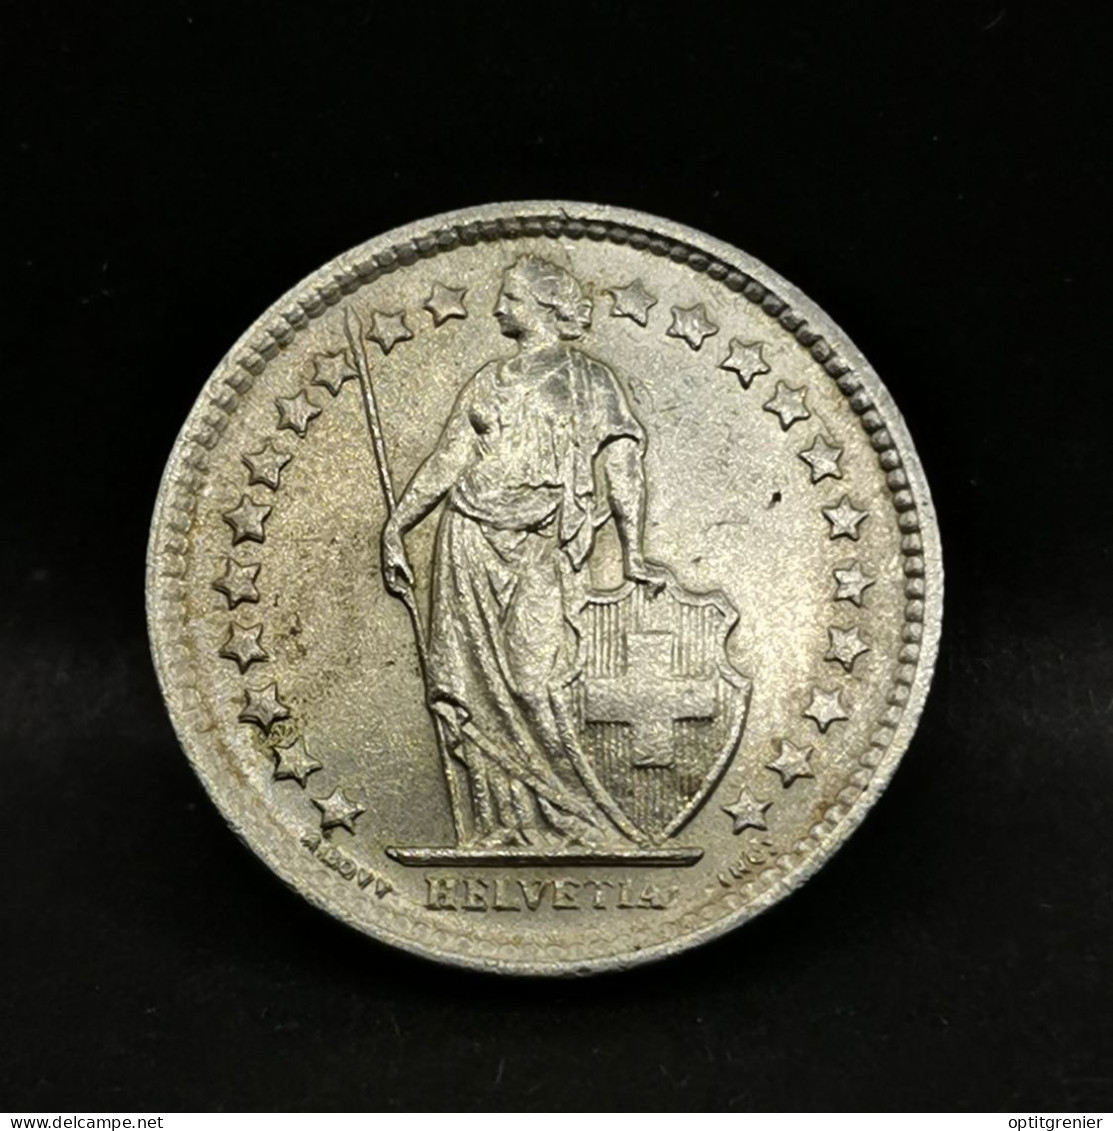 1/2 FRANC ARGENT 1962 B BERNE HELVETIA DEBOUT SUISSE / SWITZERLAND SILVER - 1/2 Franc